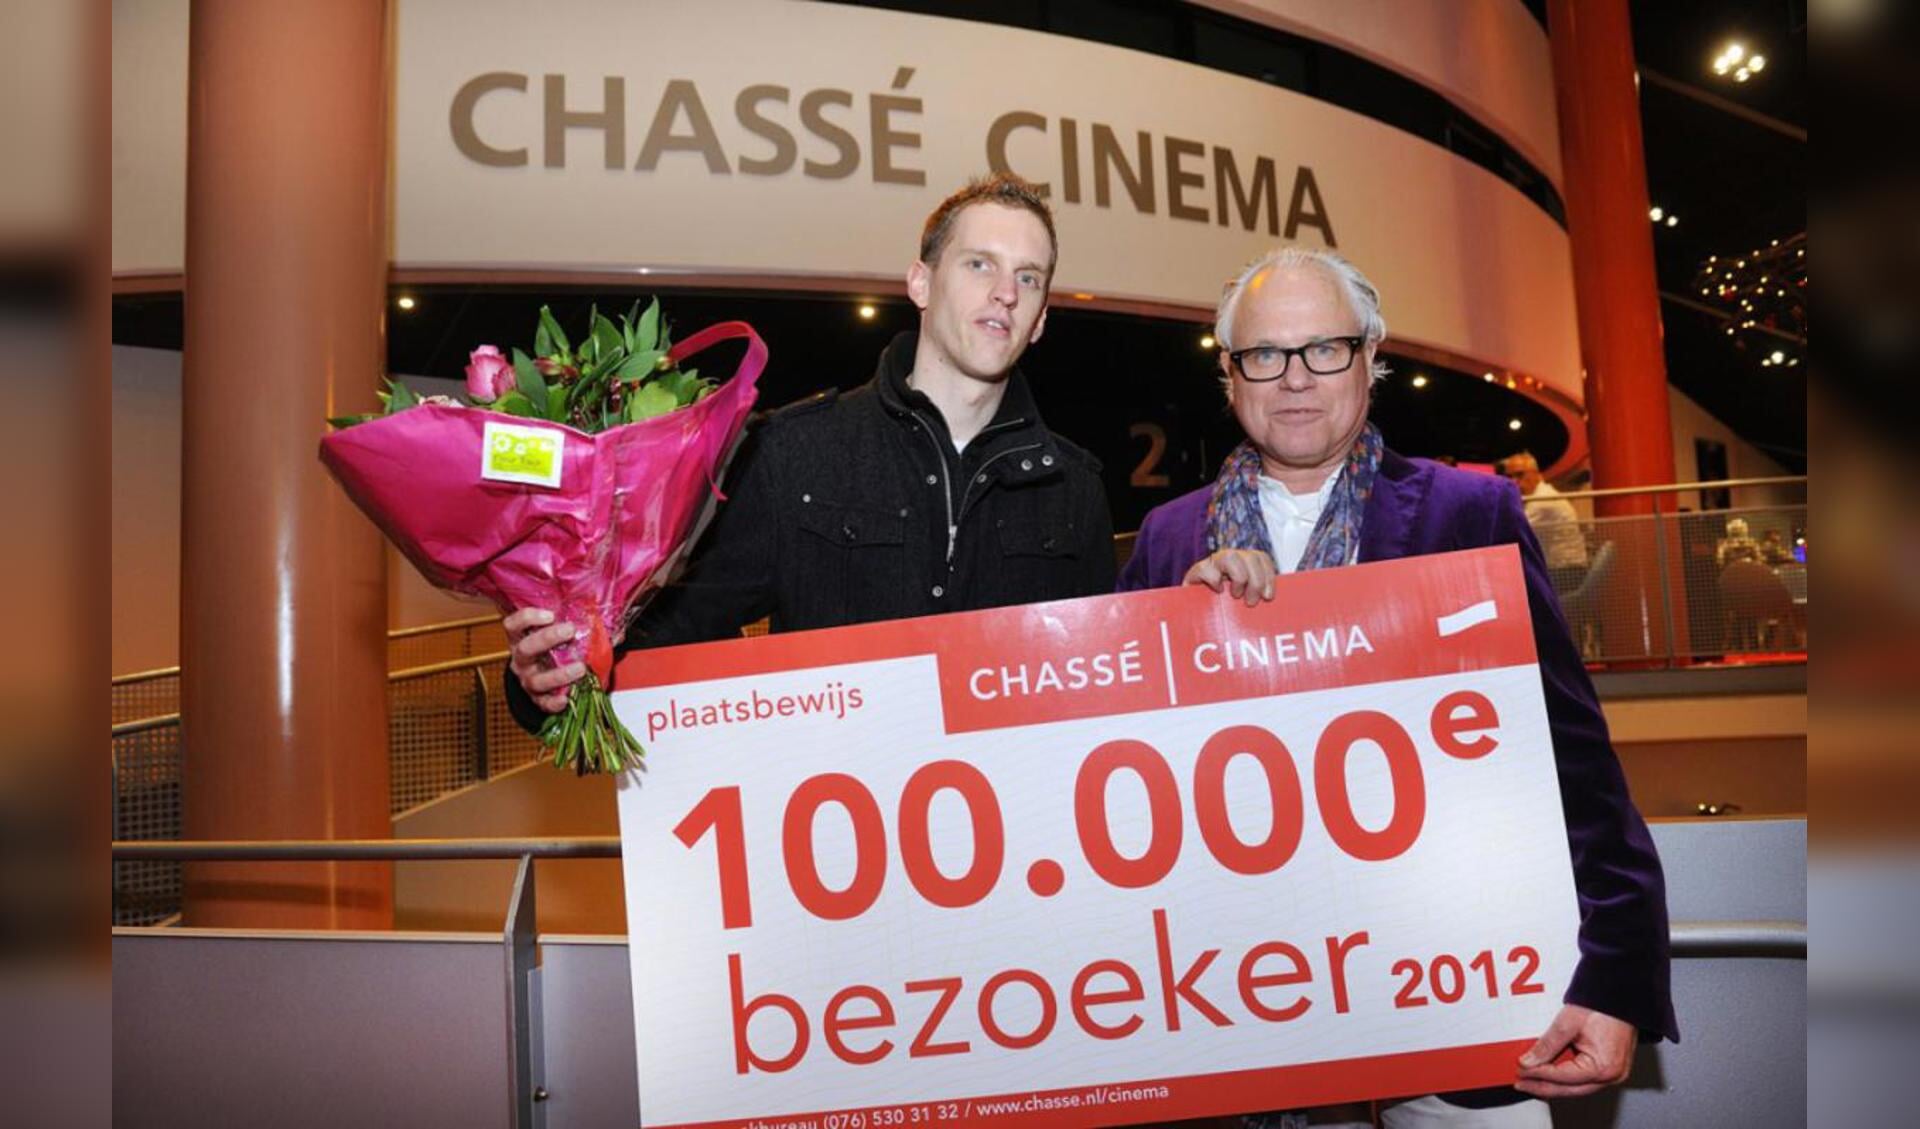 De 100-duizendste bezoeker van Chassé Ciname in 2012. foto Erald van der Aa/Chassé Cinema